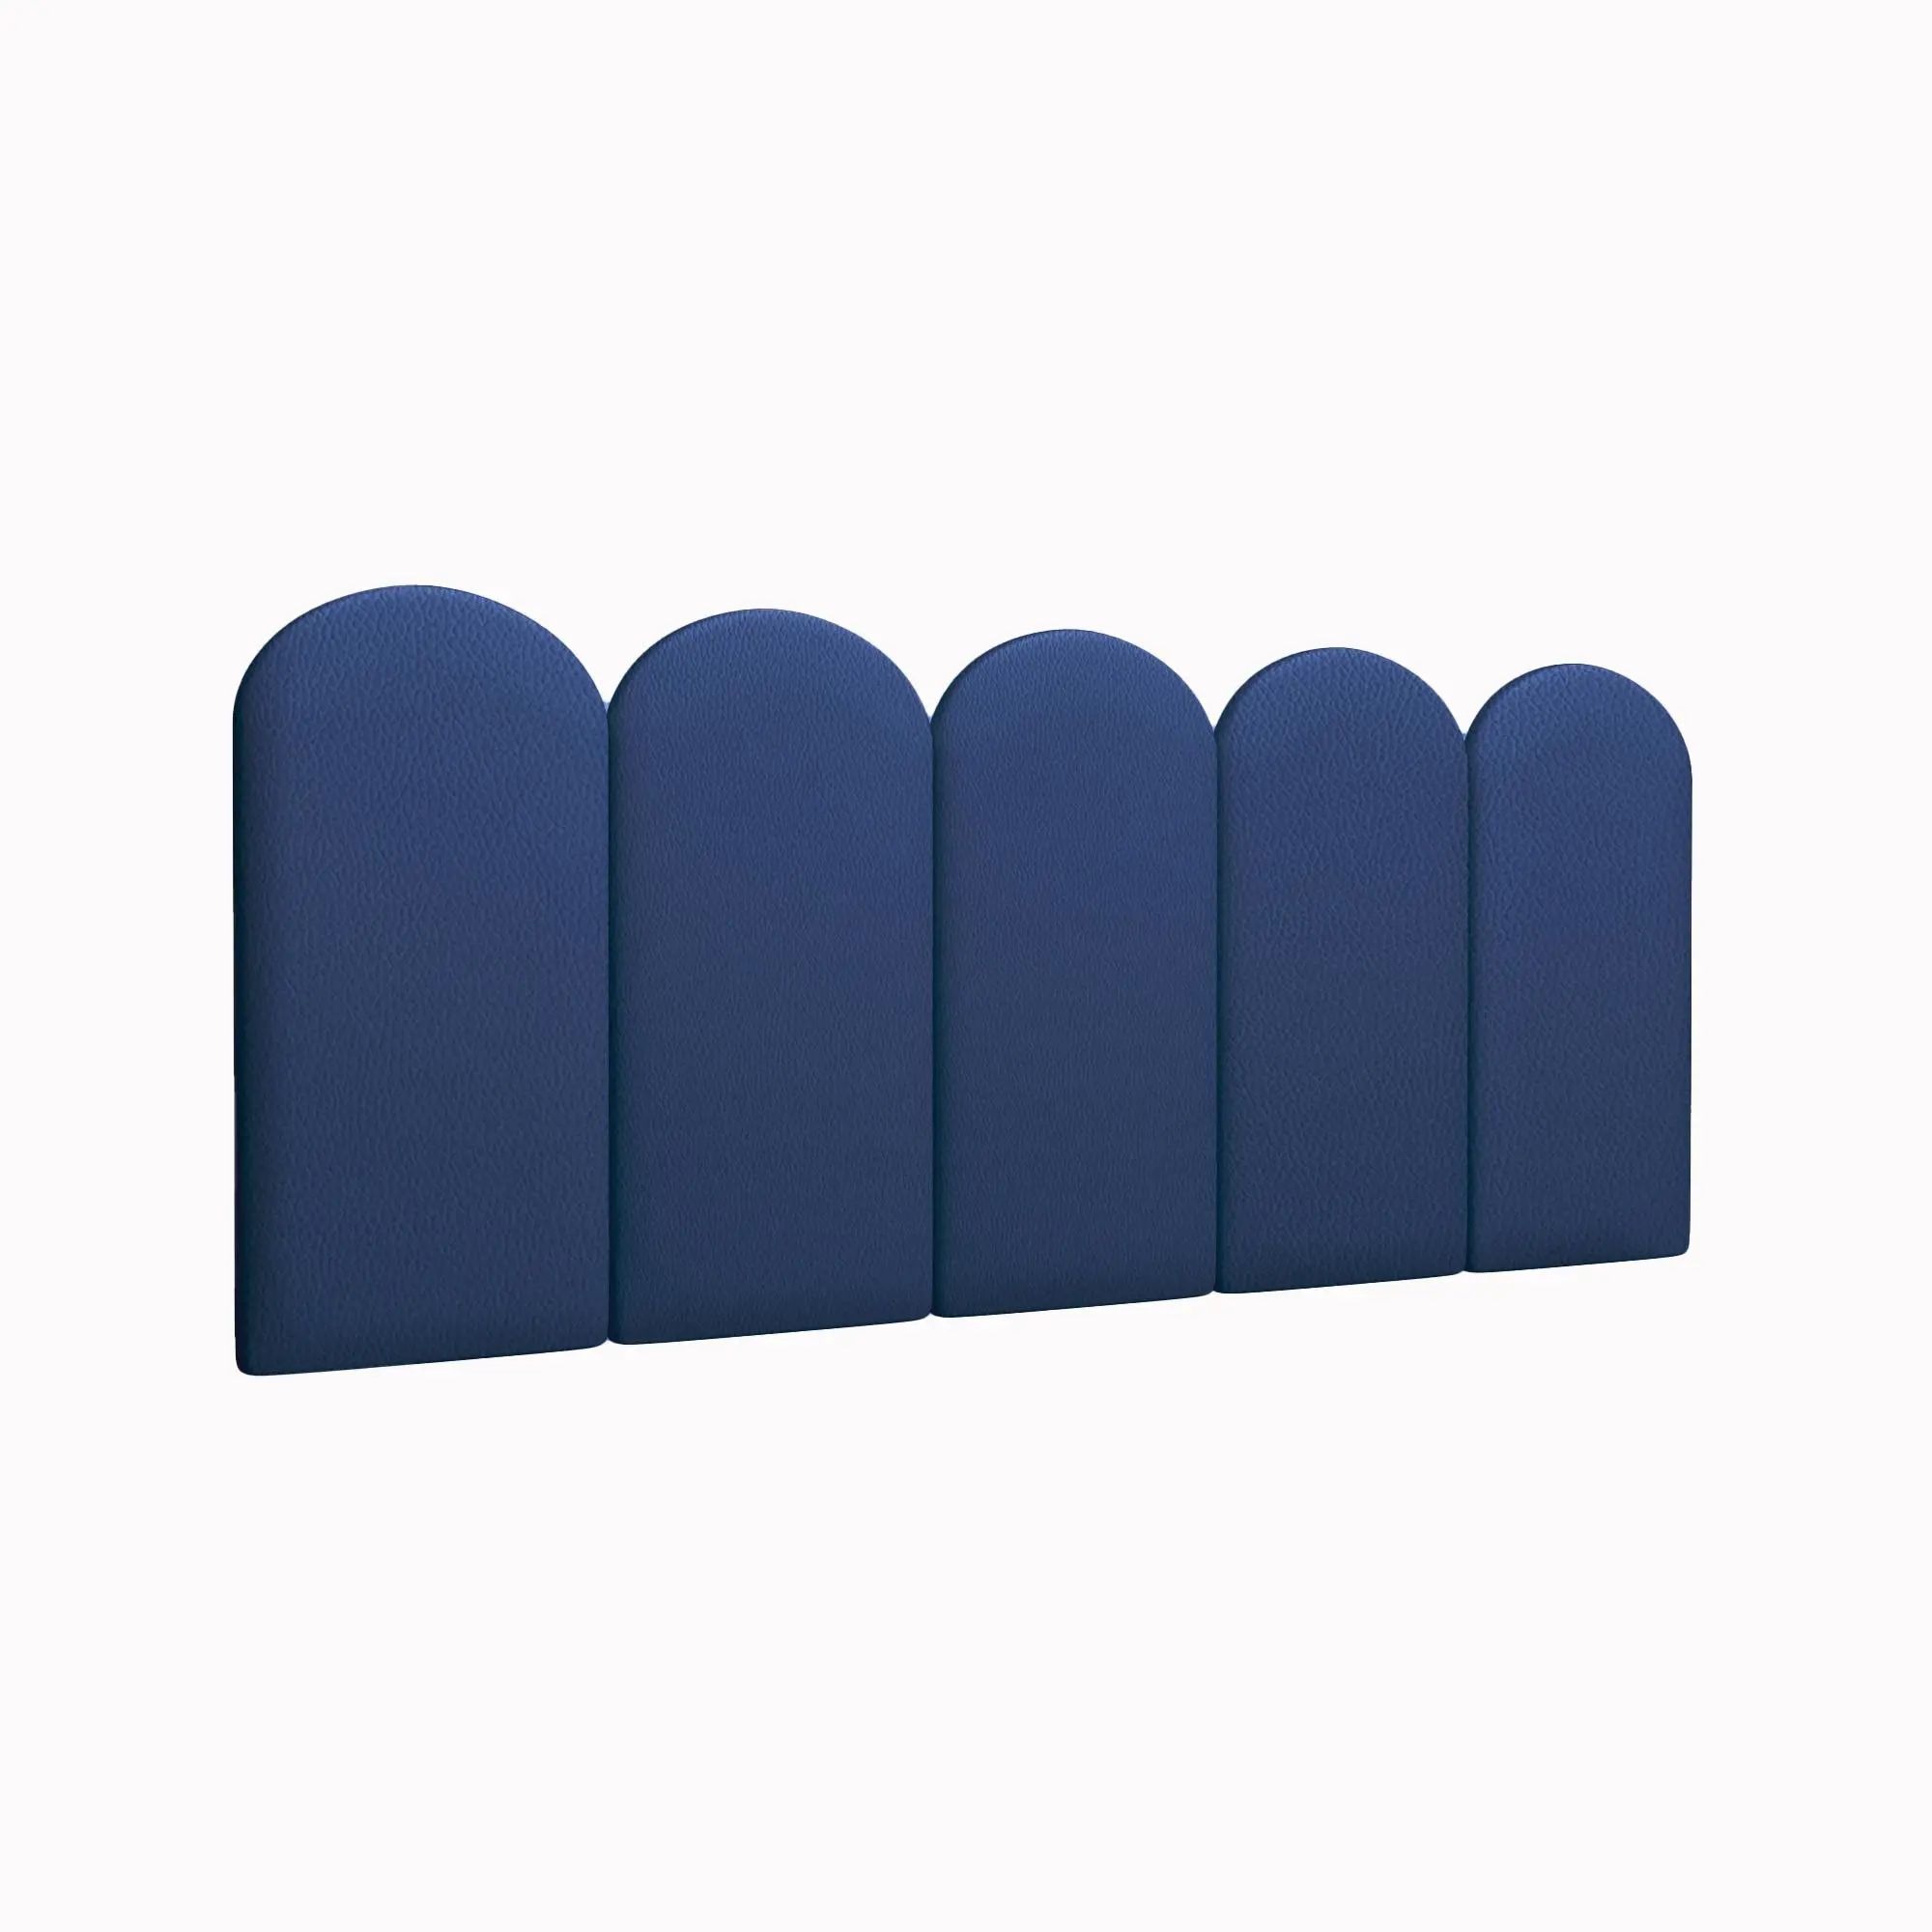 Мягкие обои Eco Leather Blue 30х60R см 4 шт. мягкие кубики плюшики весёлая азбука